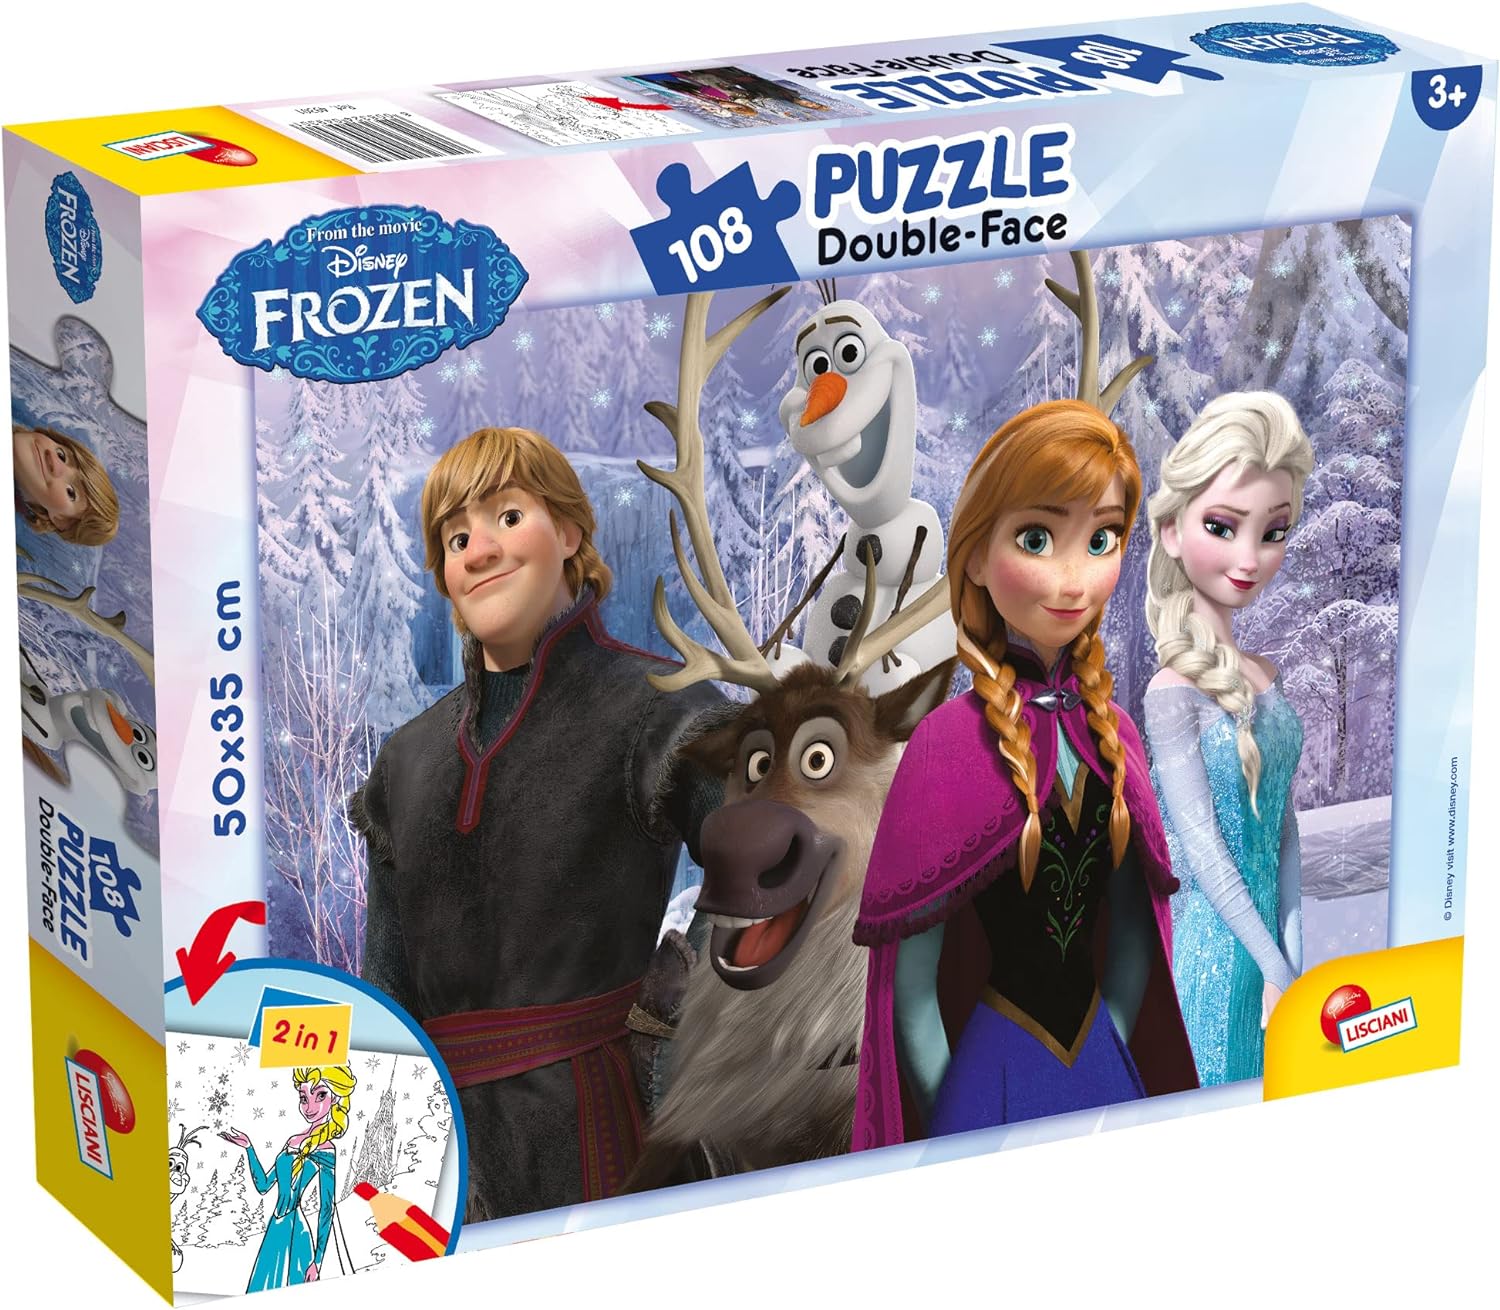 Disney Frozen Double Sided Puzzle 108pcs